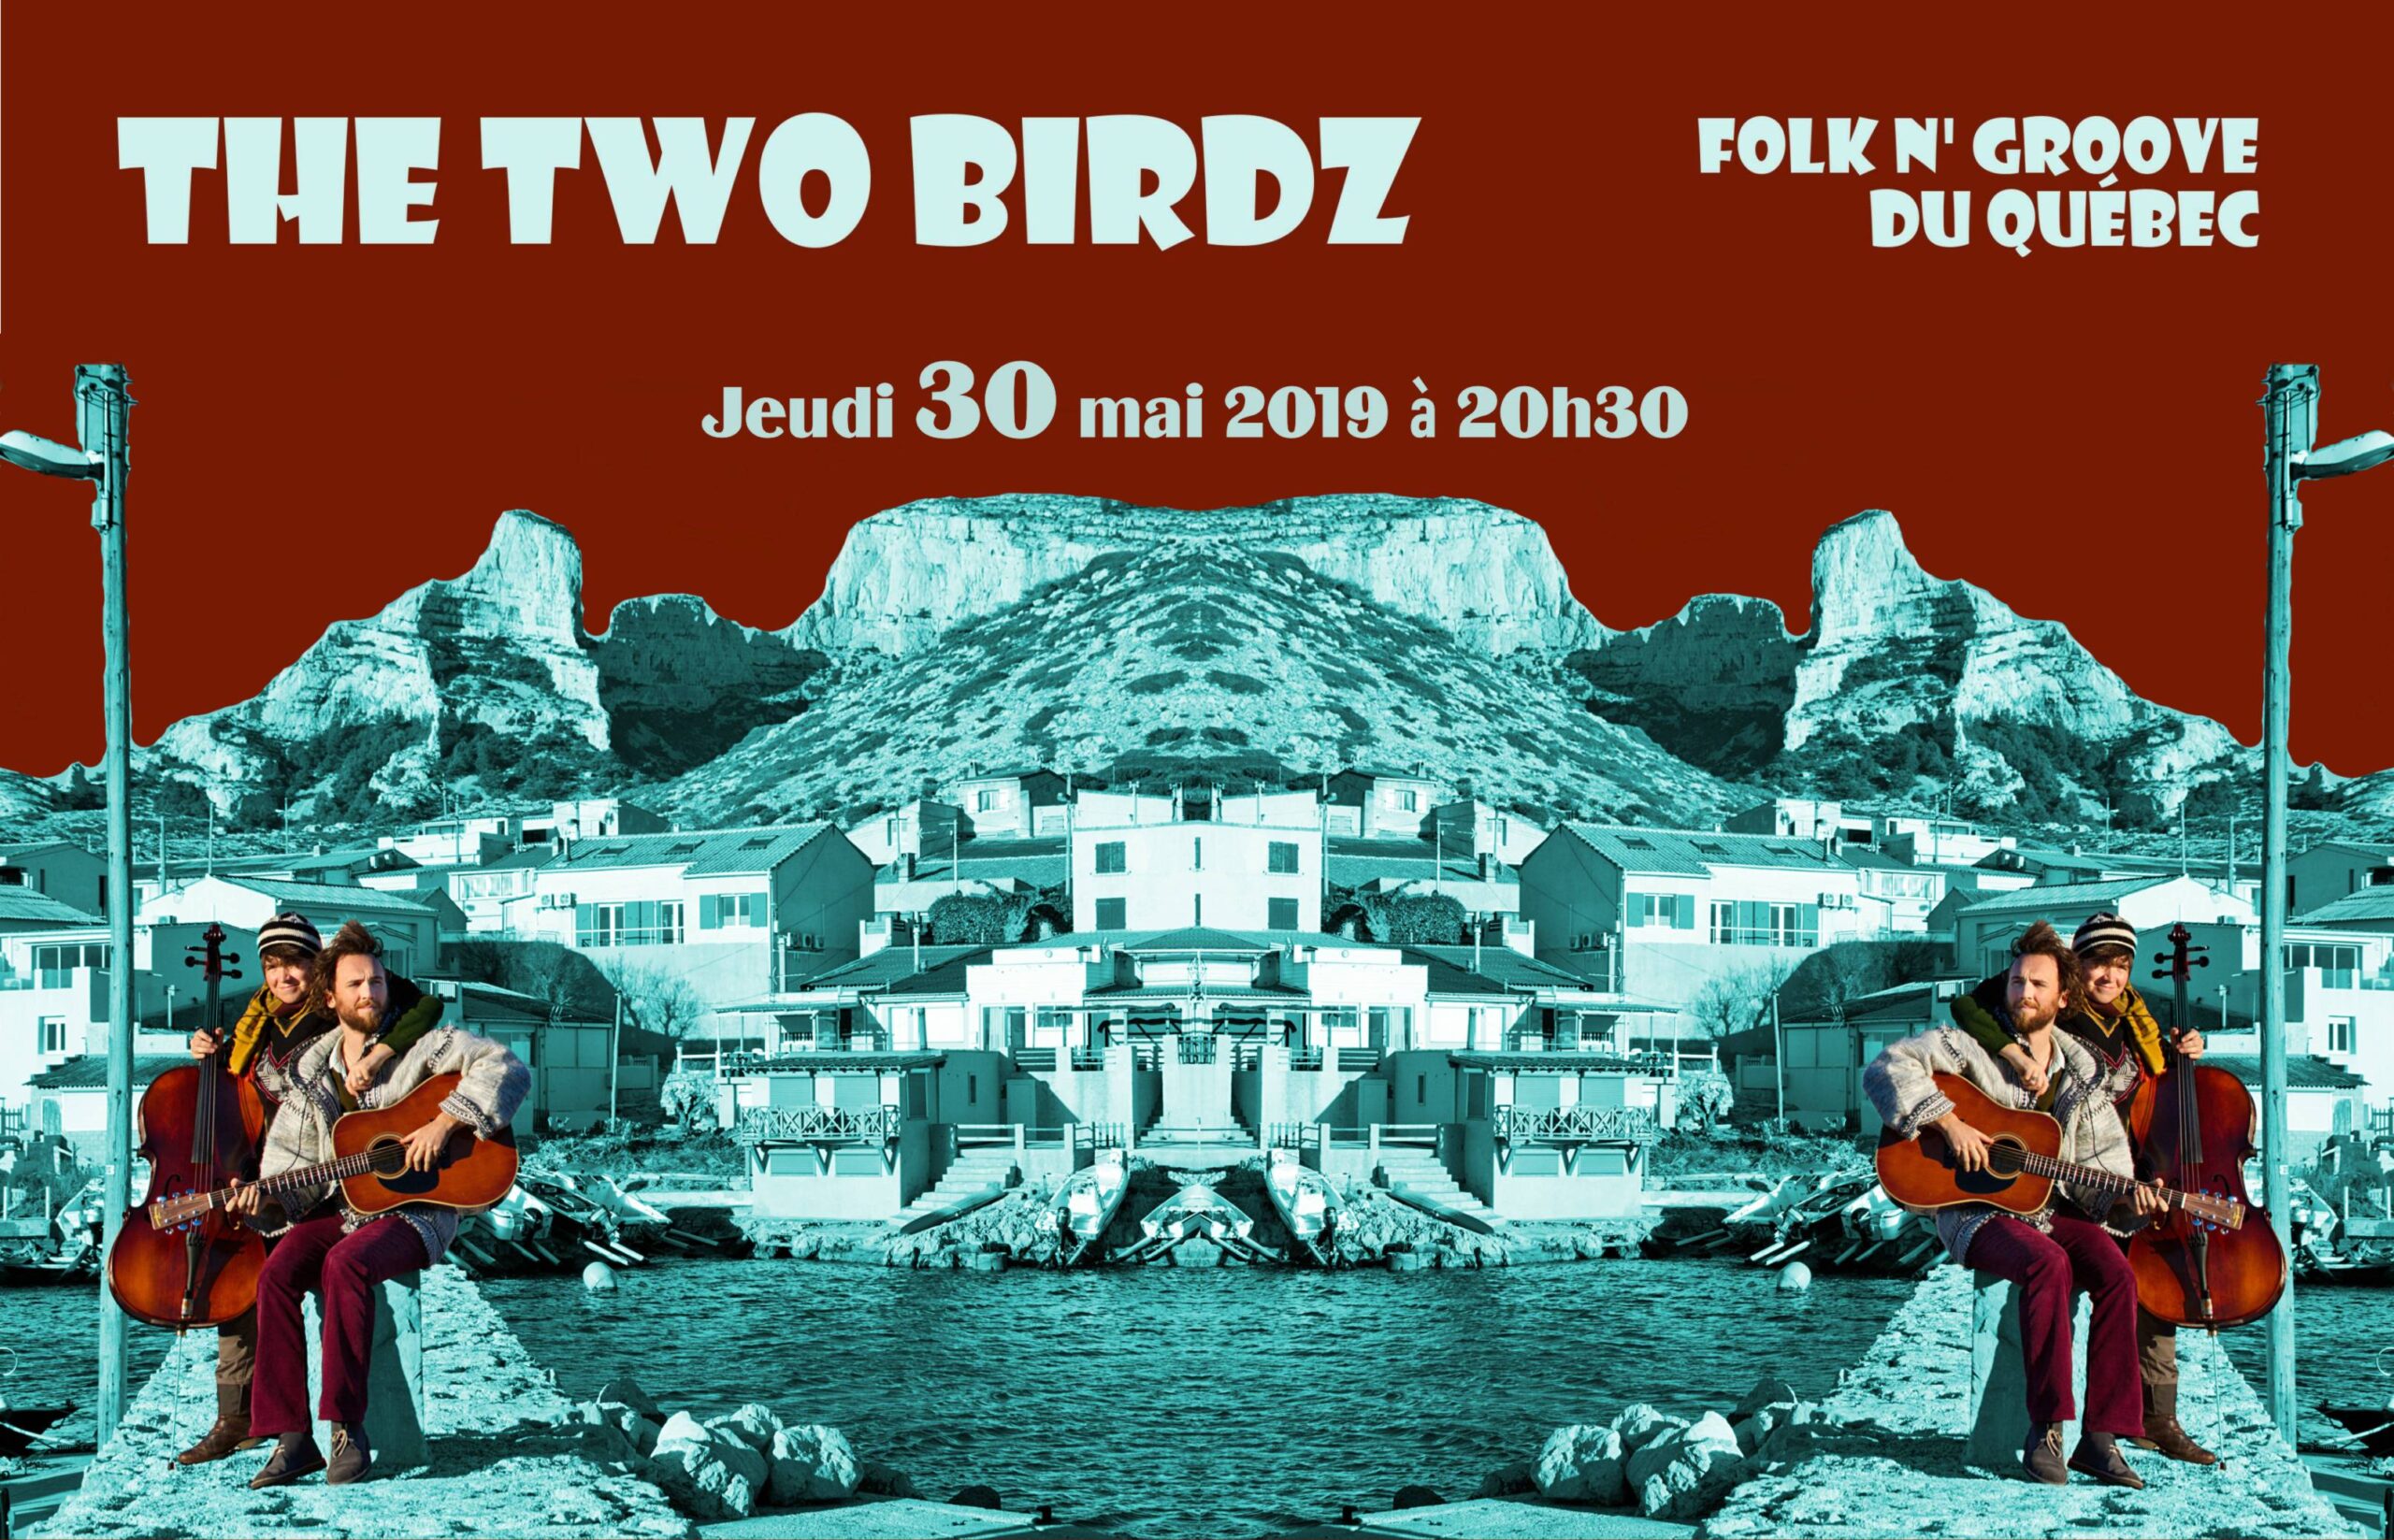 The Two Birdz, le duo folk n’ groove